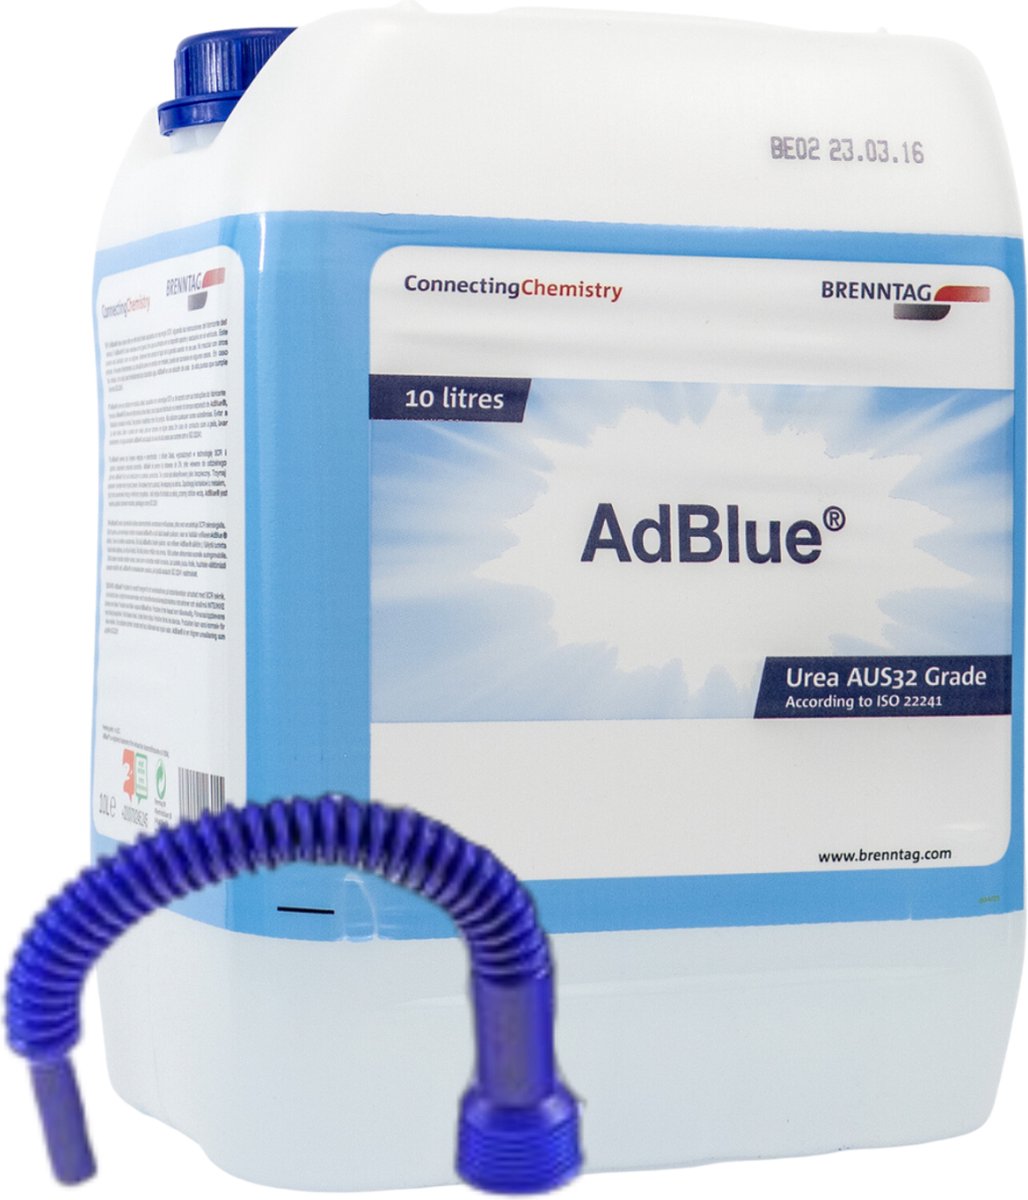 Adblue 10 liter - Inclusief Handige Vulslang - ISO 22241 gecertificeerd -  UREA AUS32